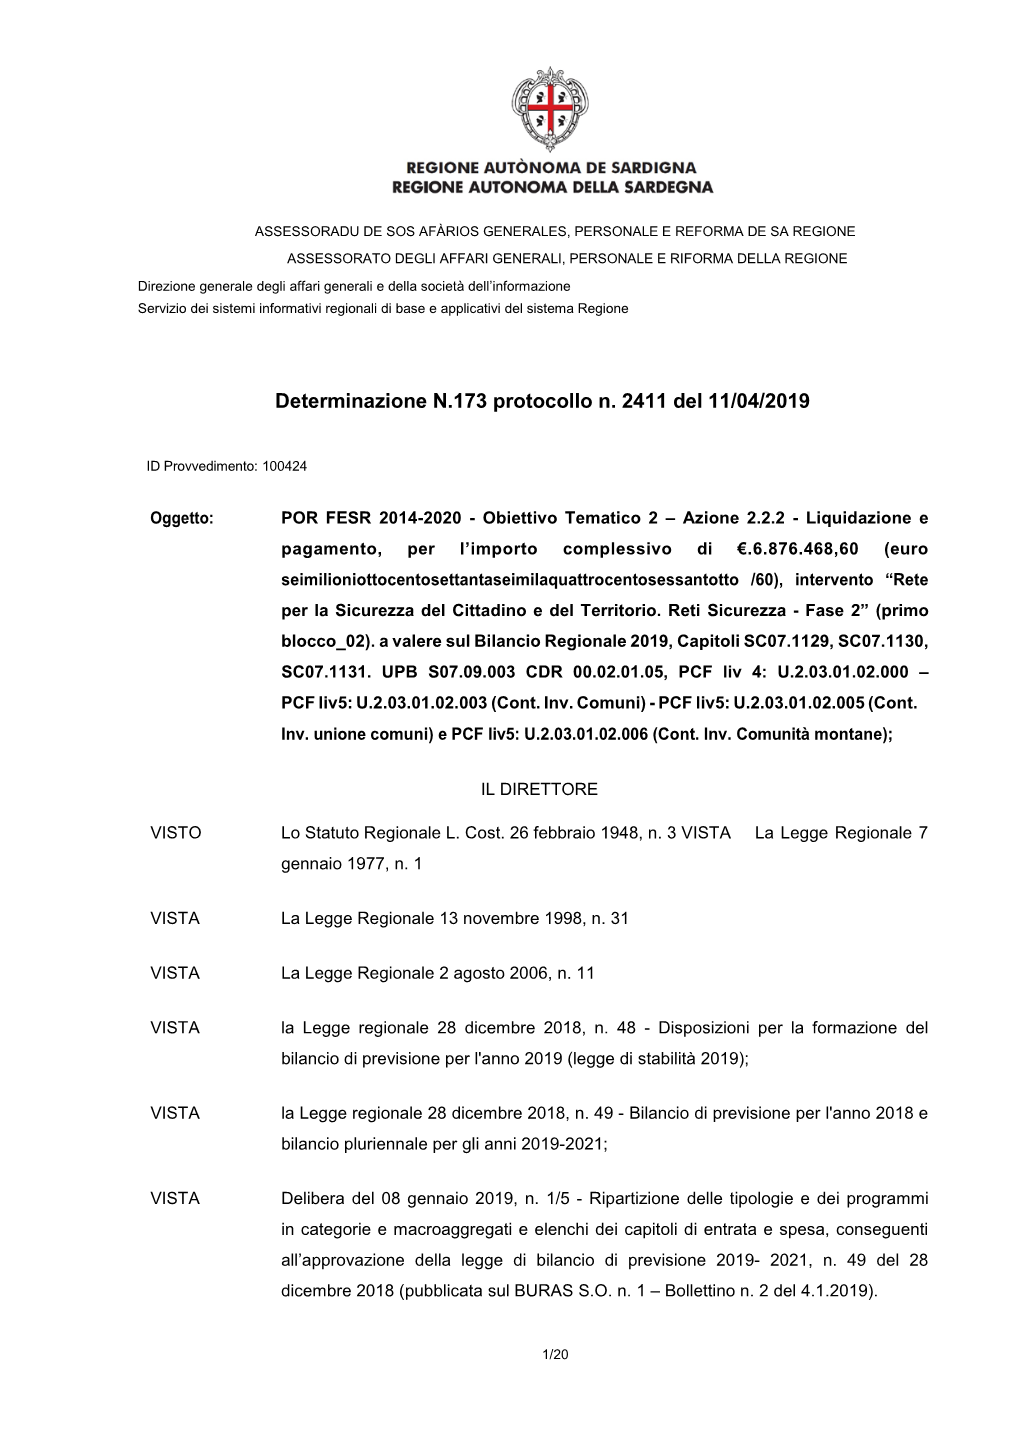 Determinazione N.173 Protocollo N. 2411 Del 11/04/2019